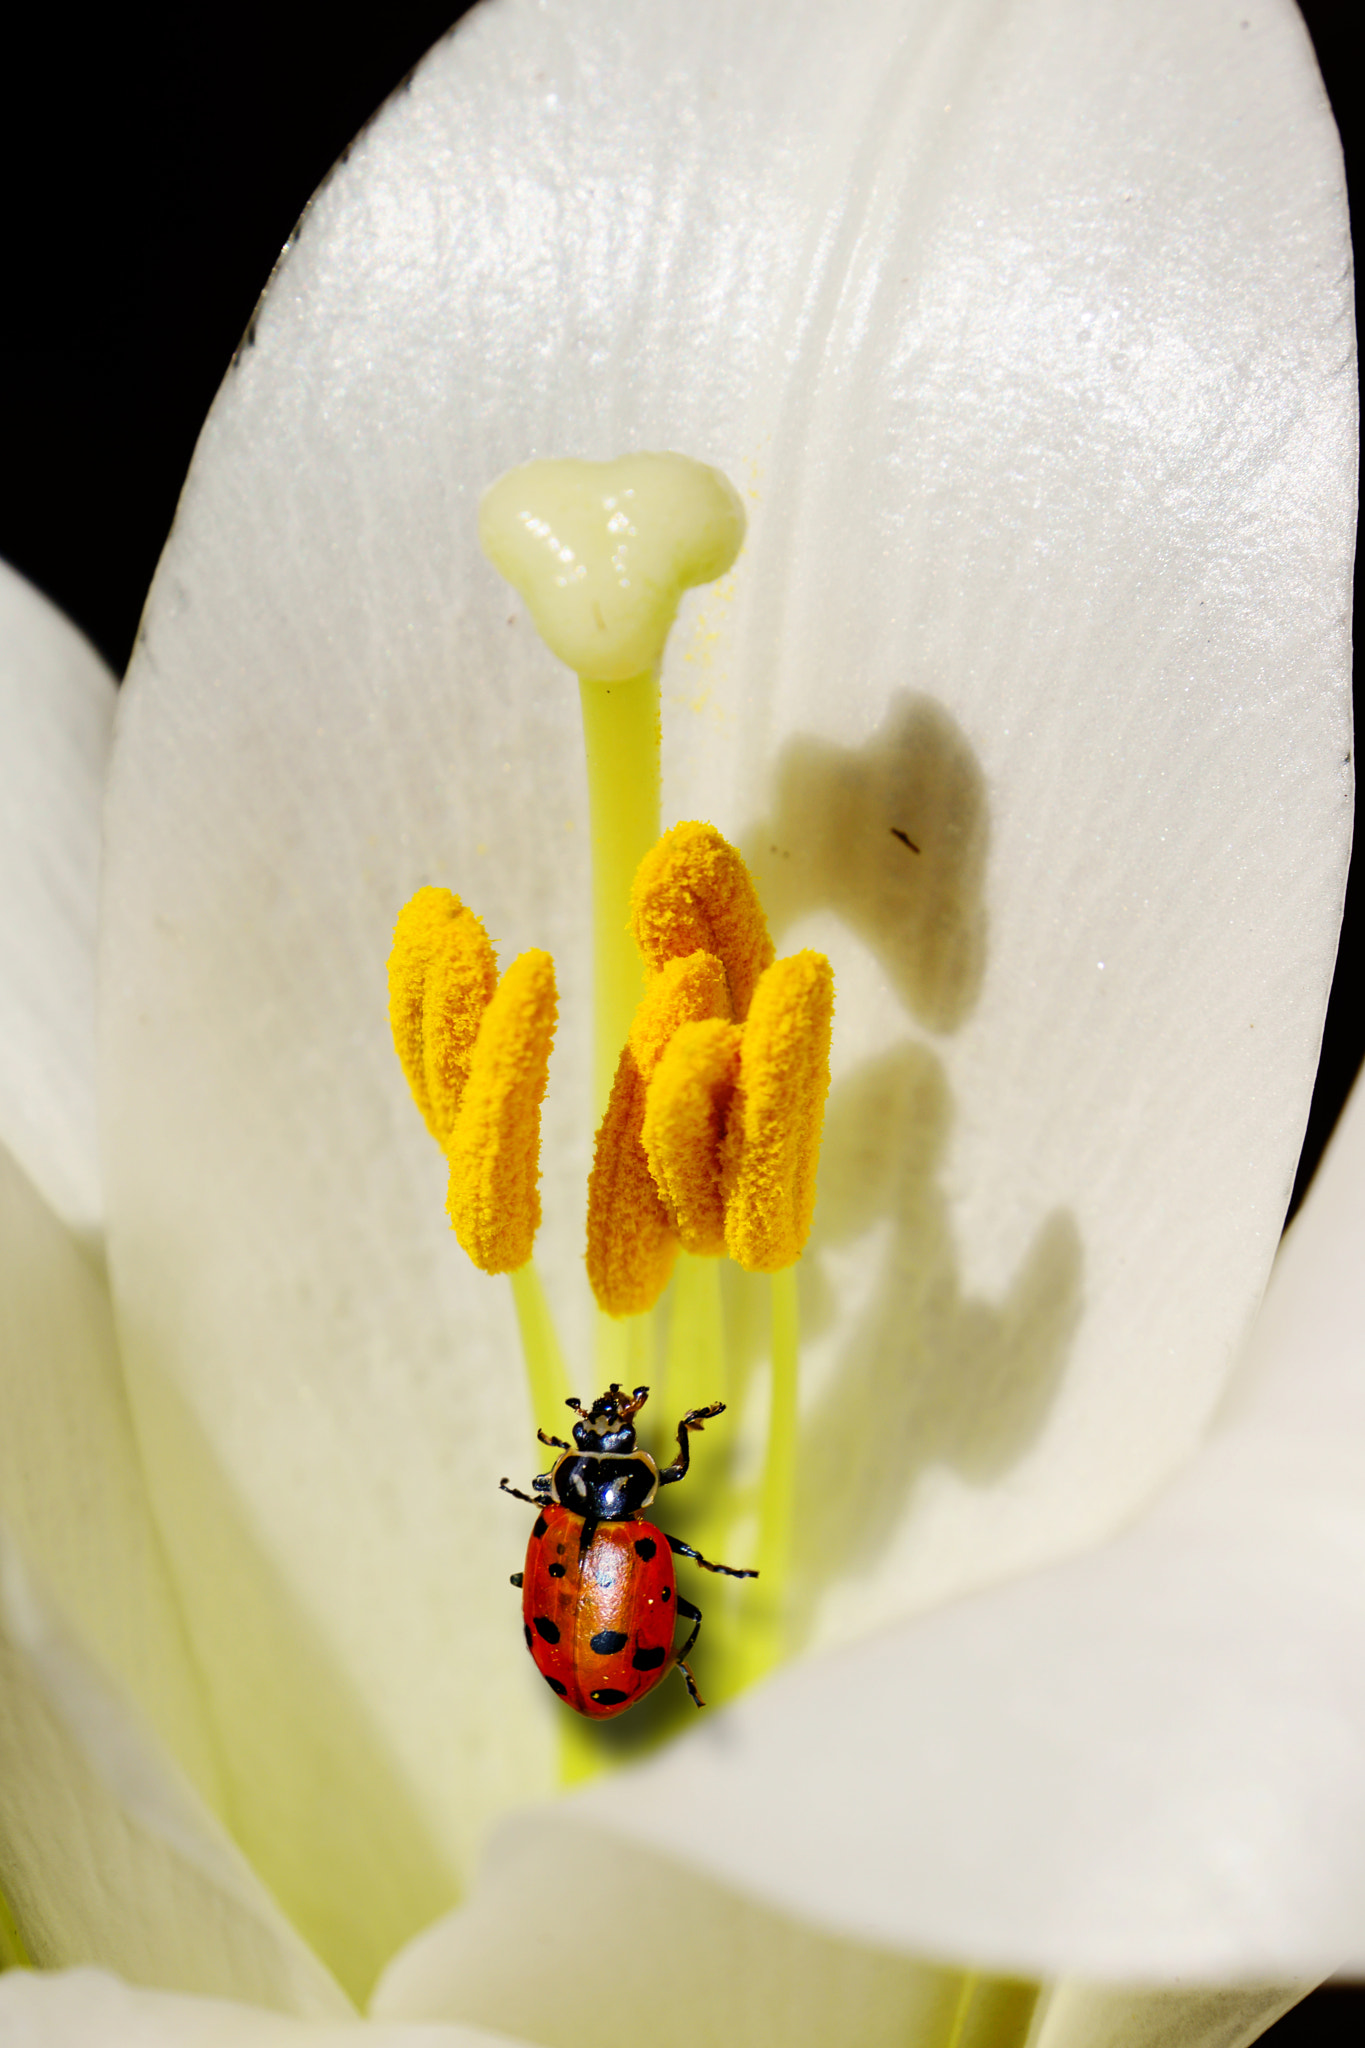 Sony Alpha NEX-7 sample photo. Ladybug photography